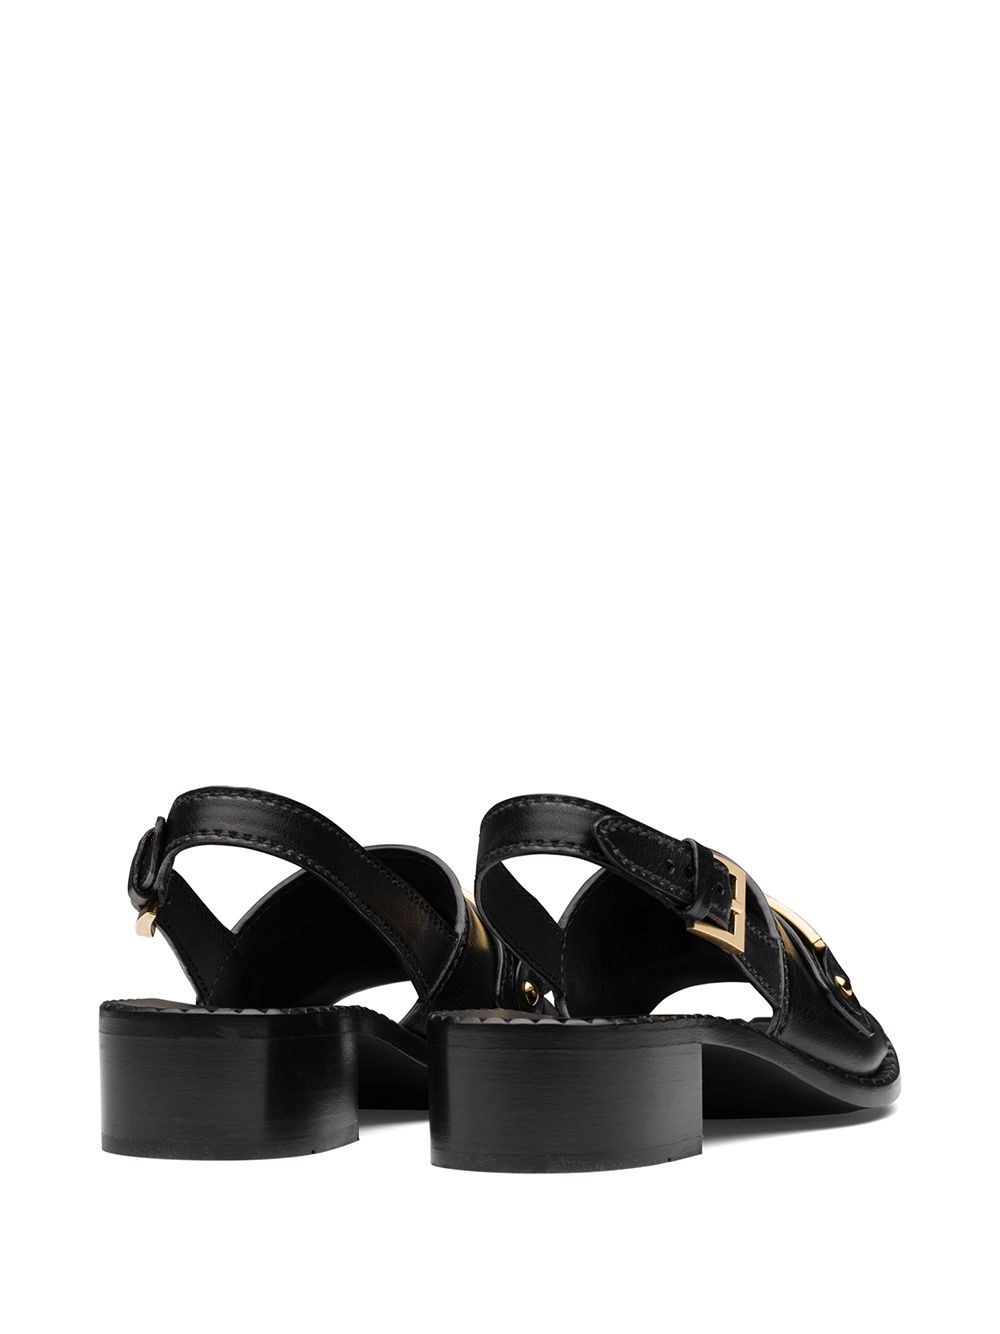 Prada Chain Detail Sandals - Farfetch